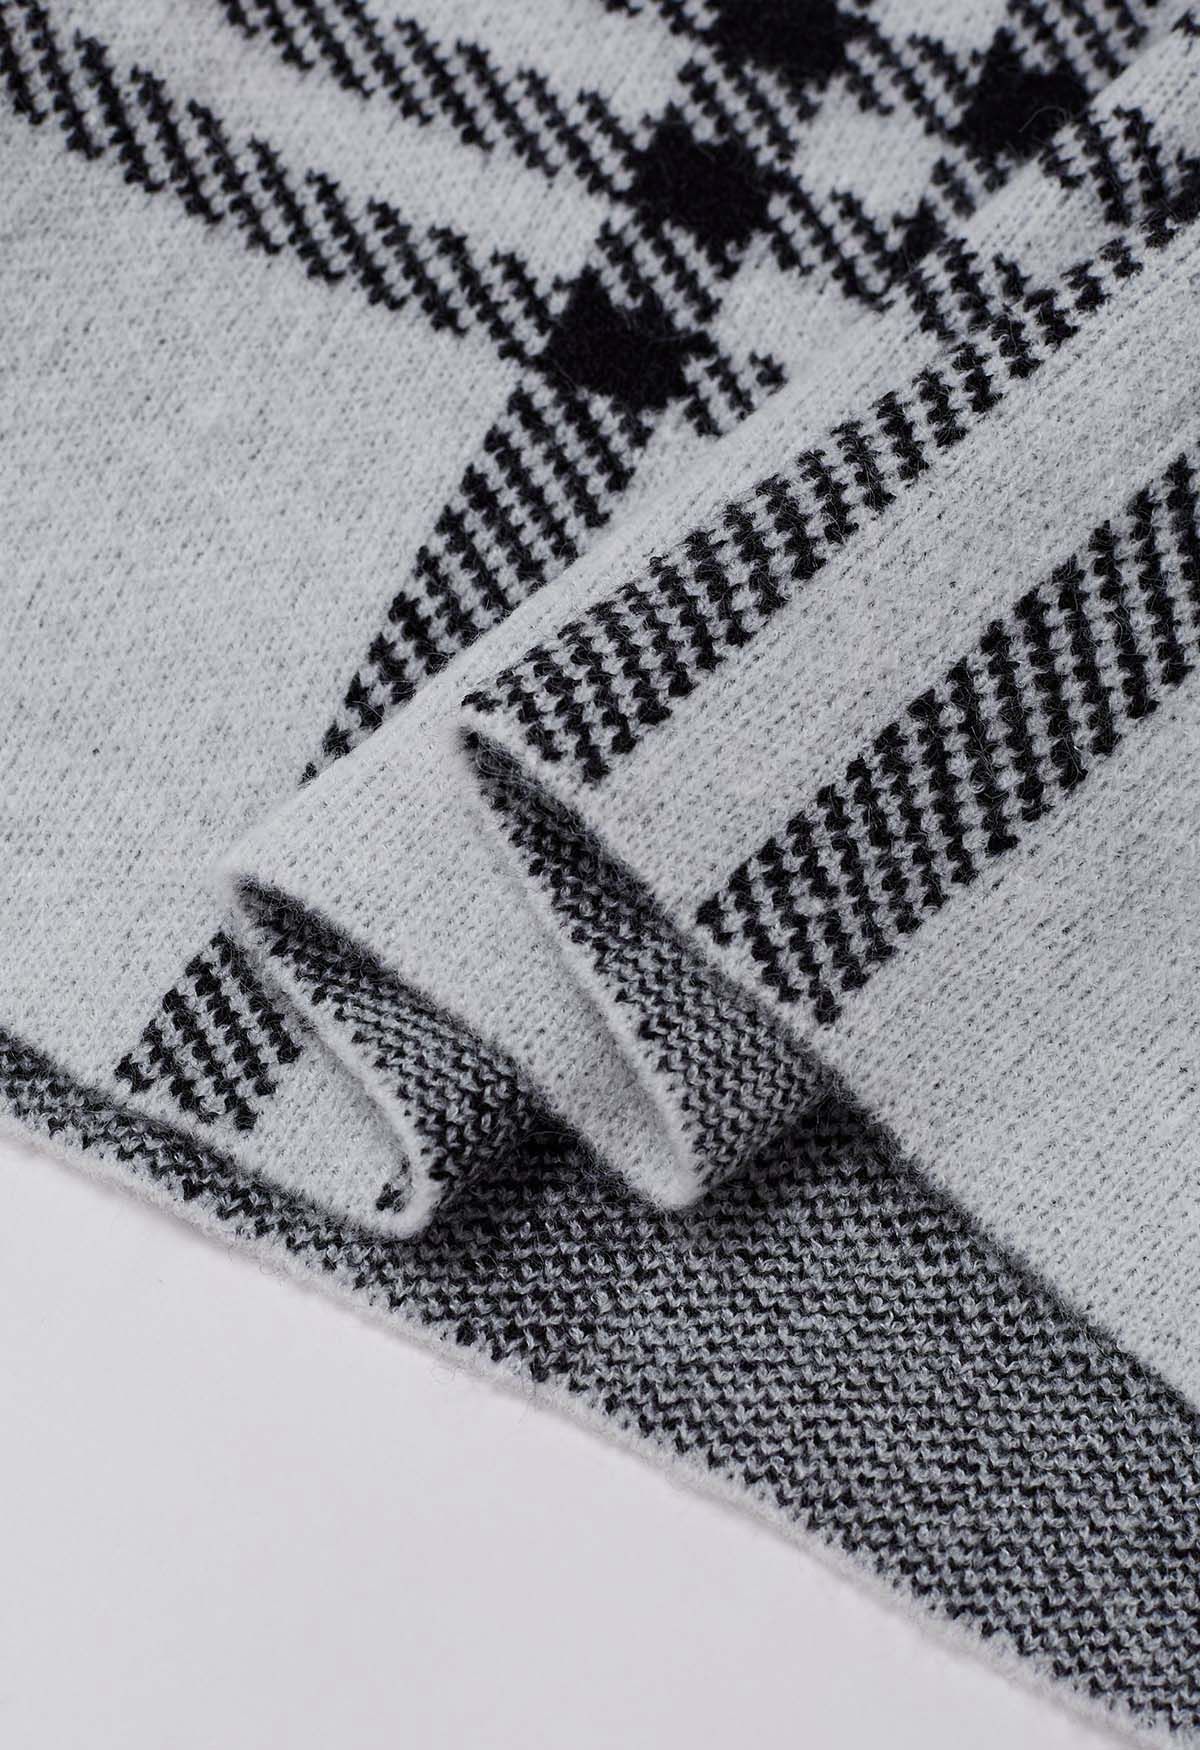 Pull classique en tricot à col rond et à carreaux en gris